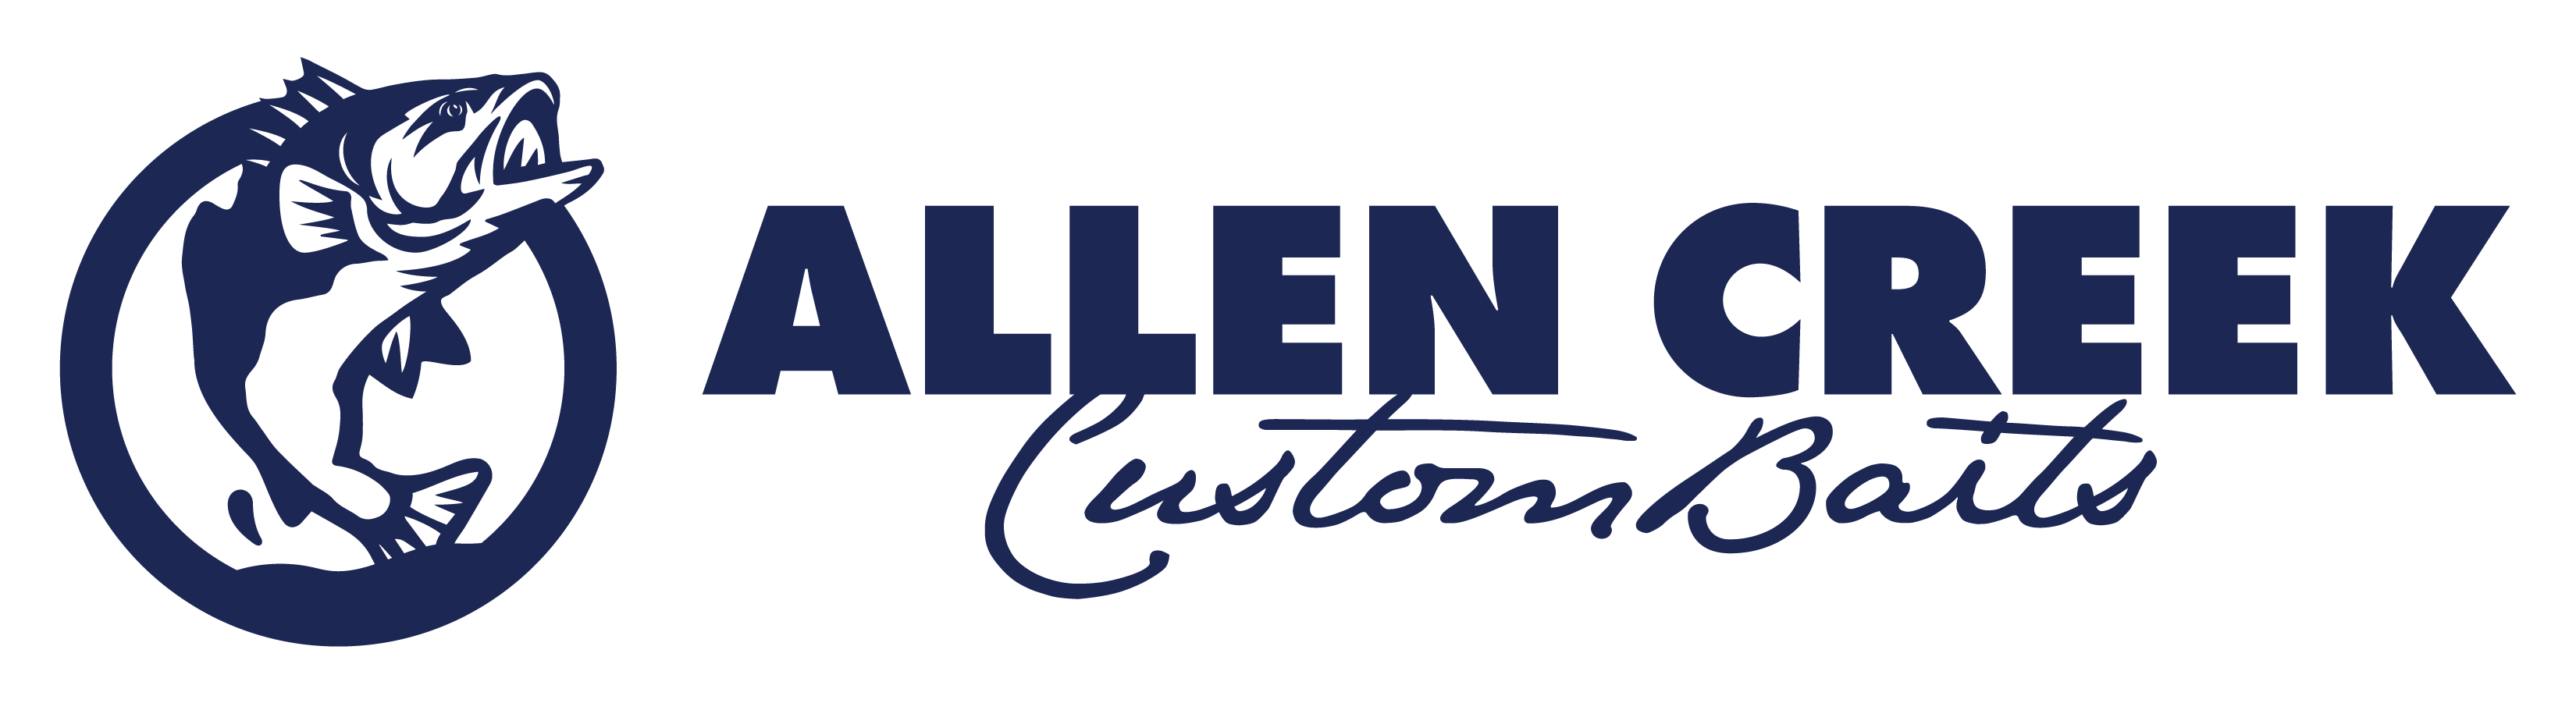 Allen Creek Custom Baits